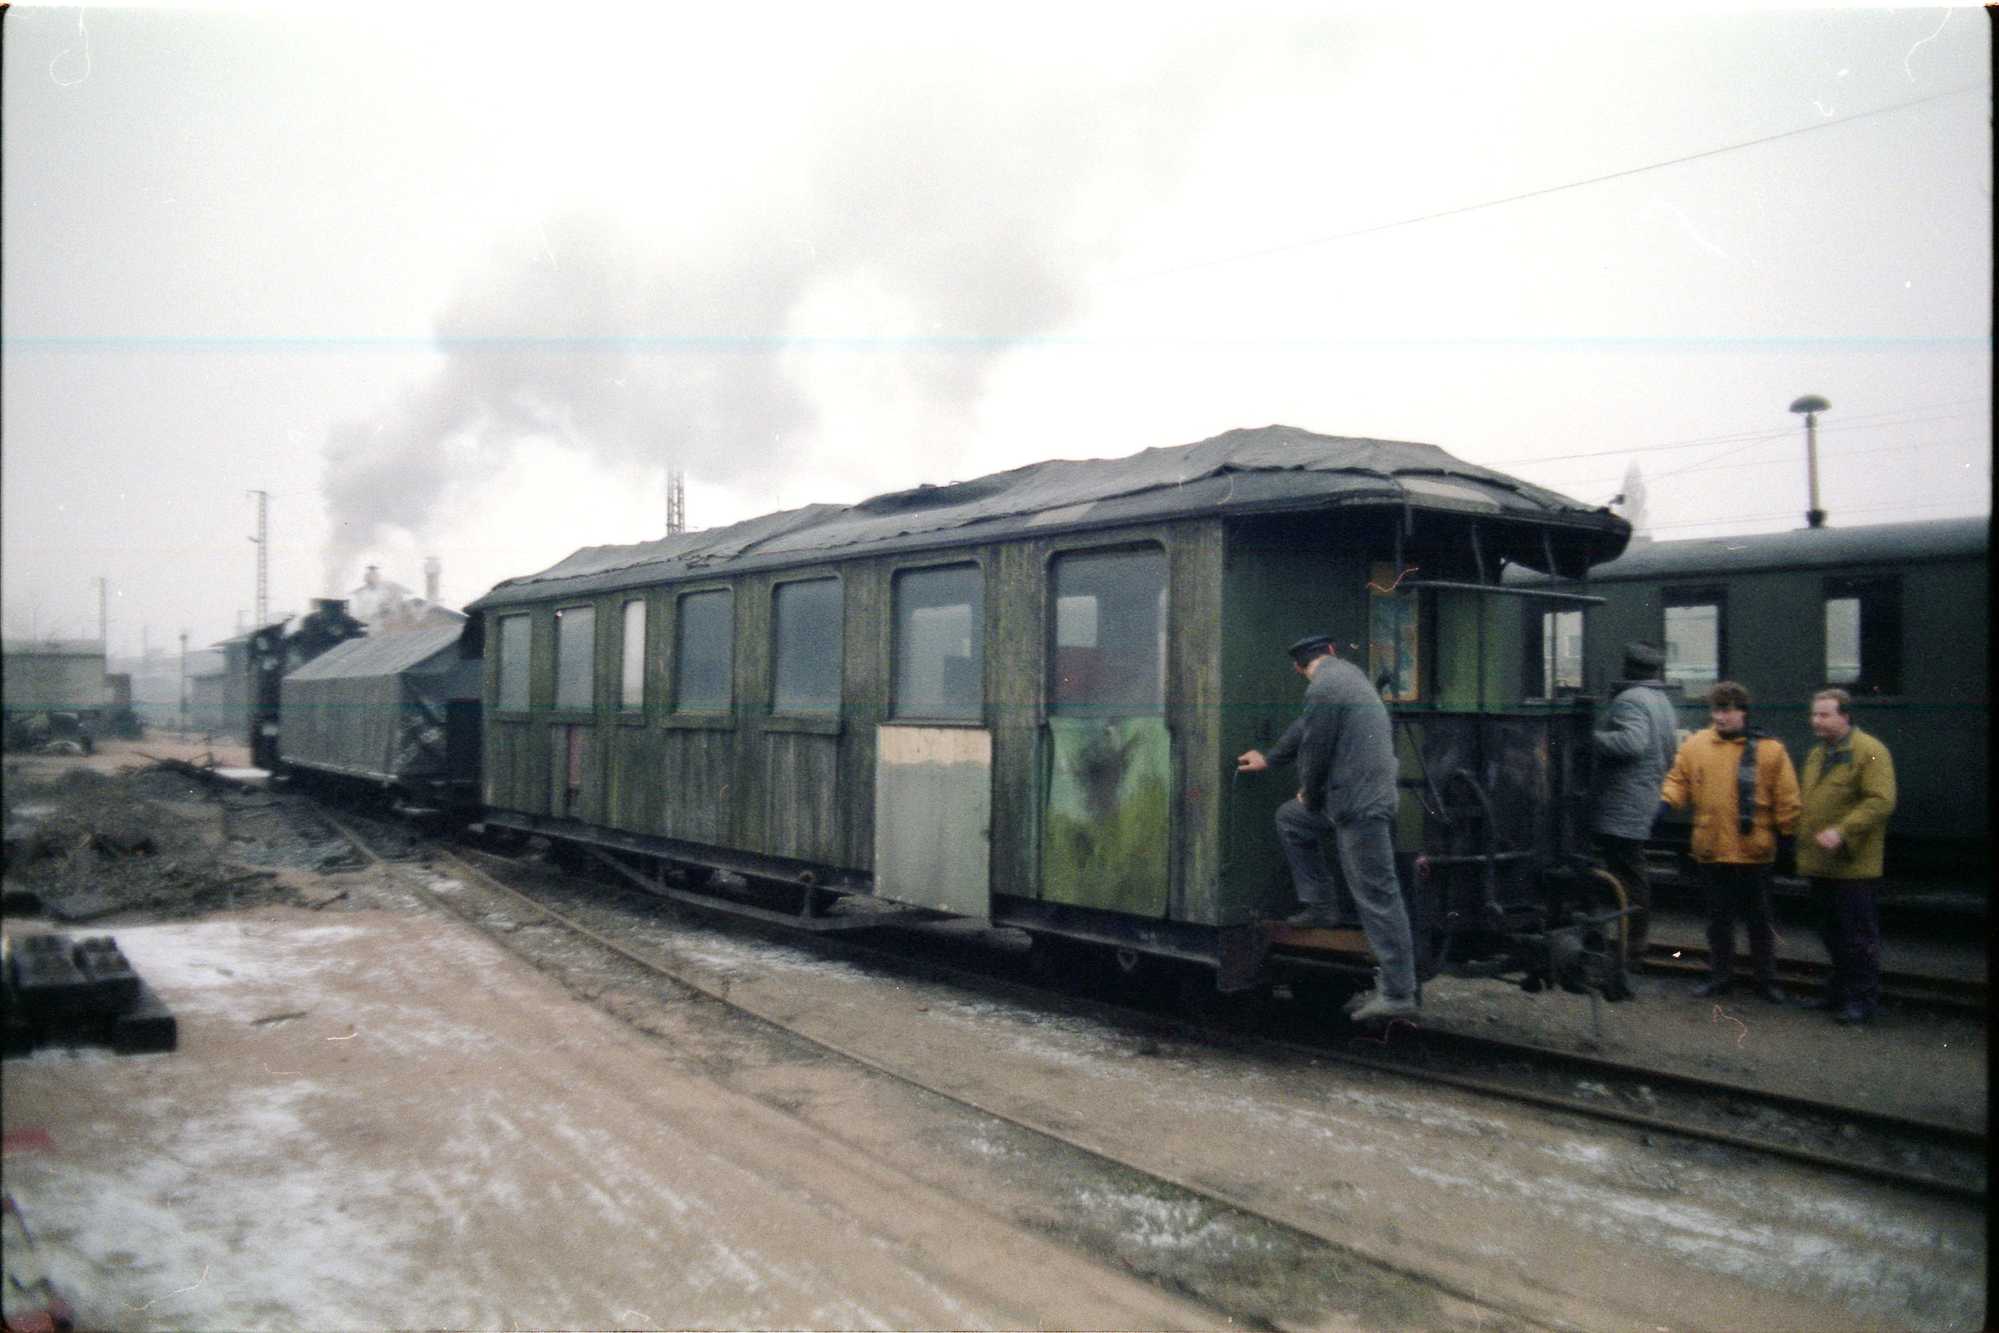 Am Ende der Rangiereinheit auf dem Abstellgleis in Radebeul-Ost hängt der großfenstrige Personenwagen 970-402 in ziemlich desolatem Zustand.